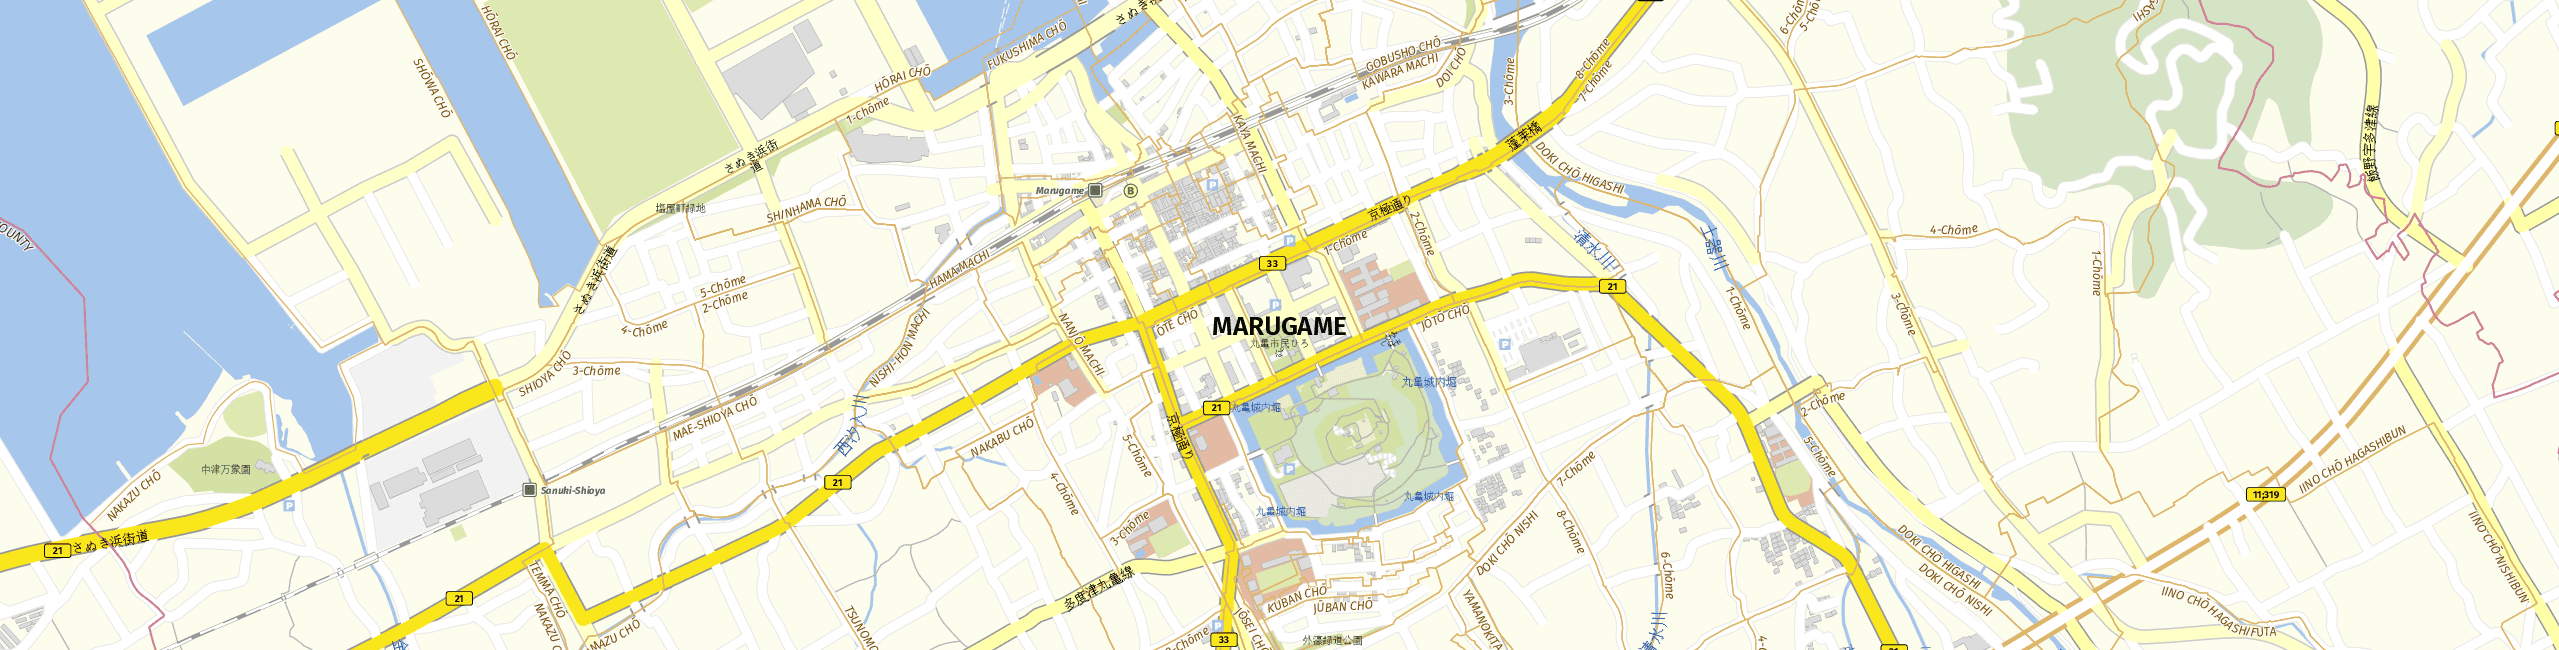 Stadtplan Marugame zum Downloaden.